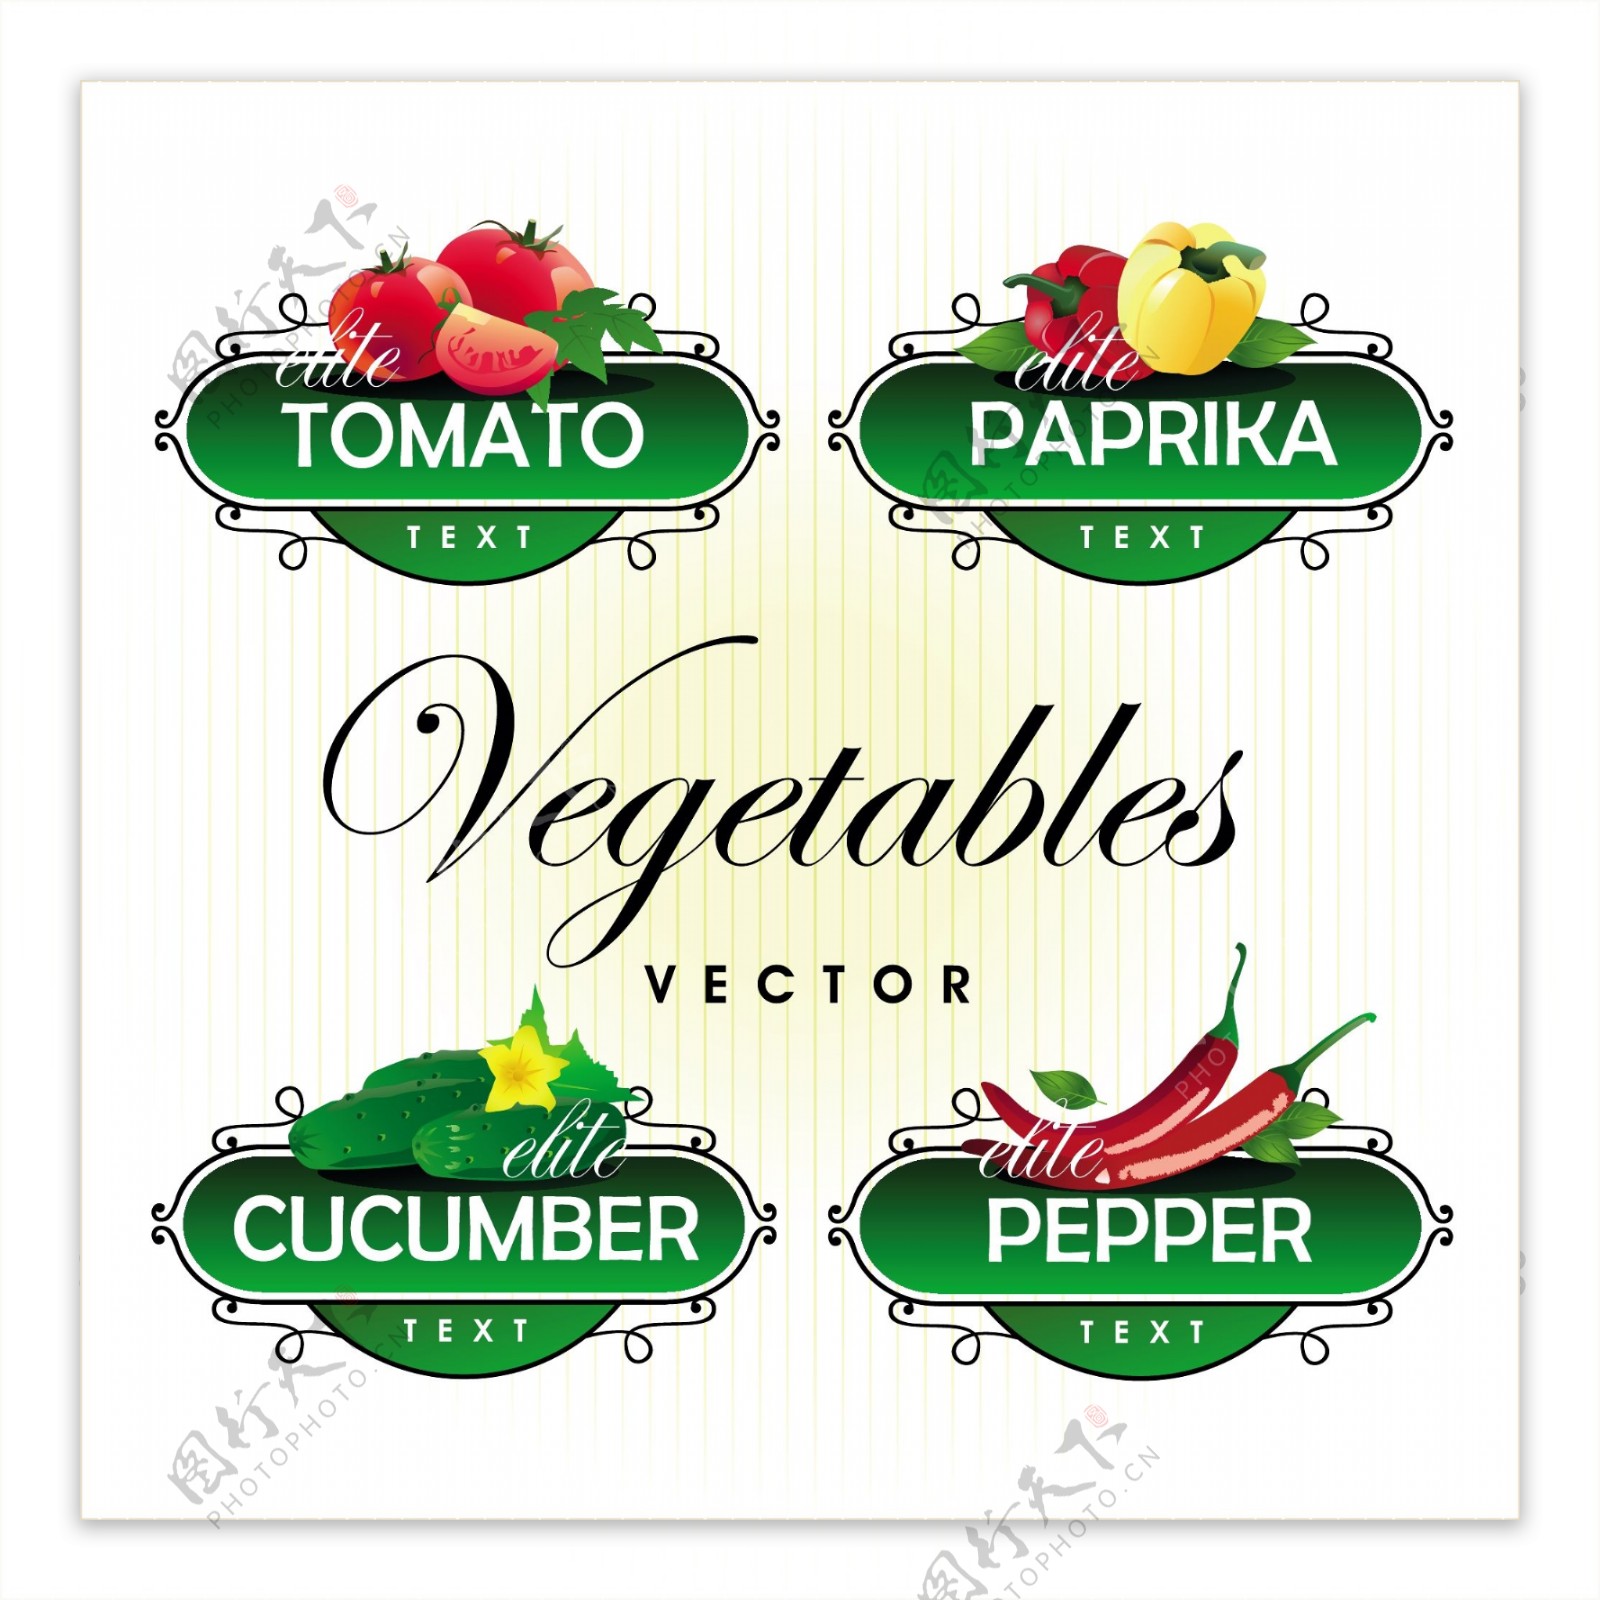 新鲜的水果和蔬菜的标签向量01